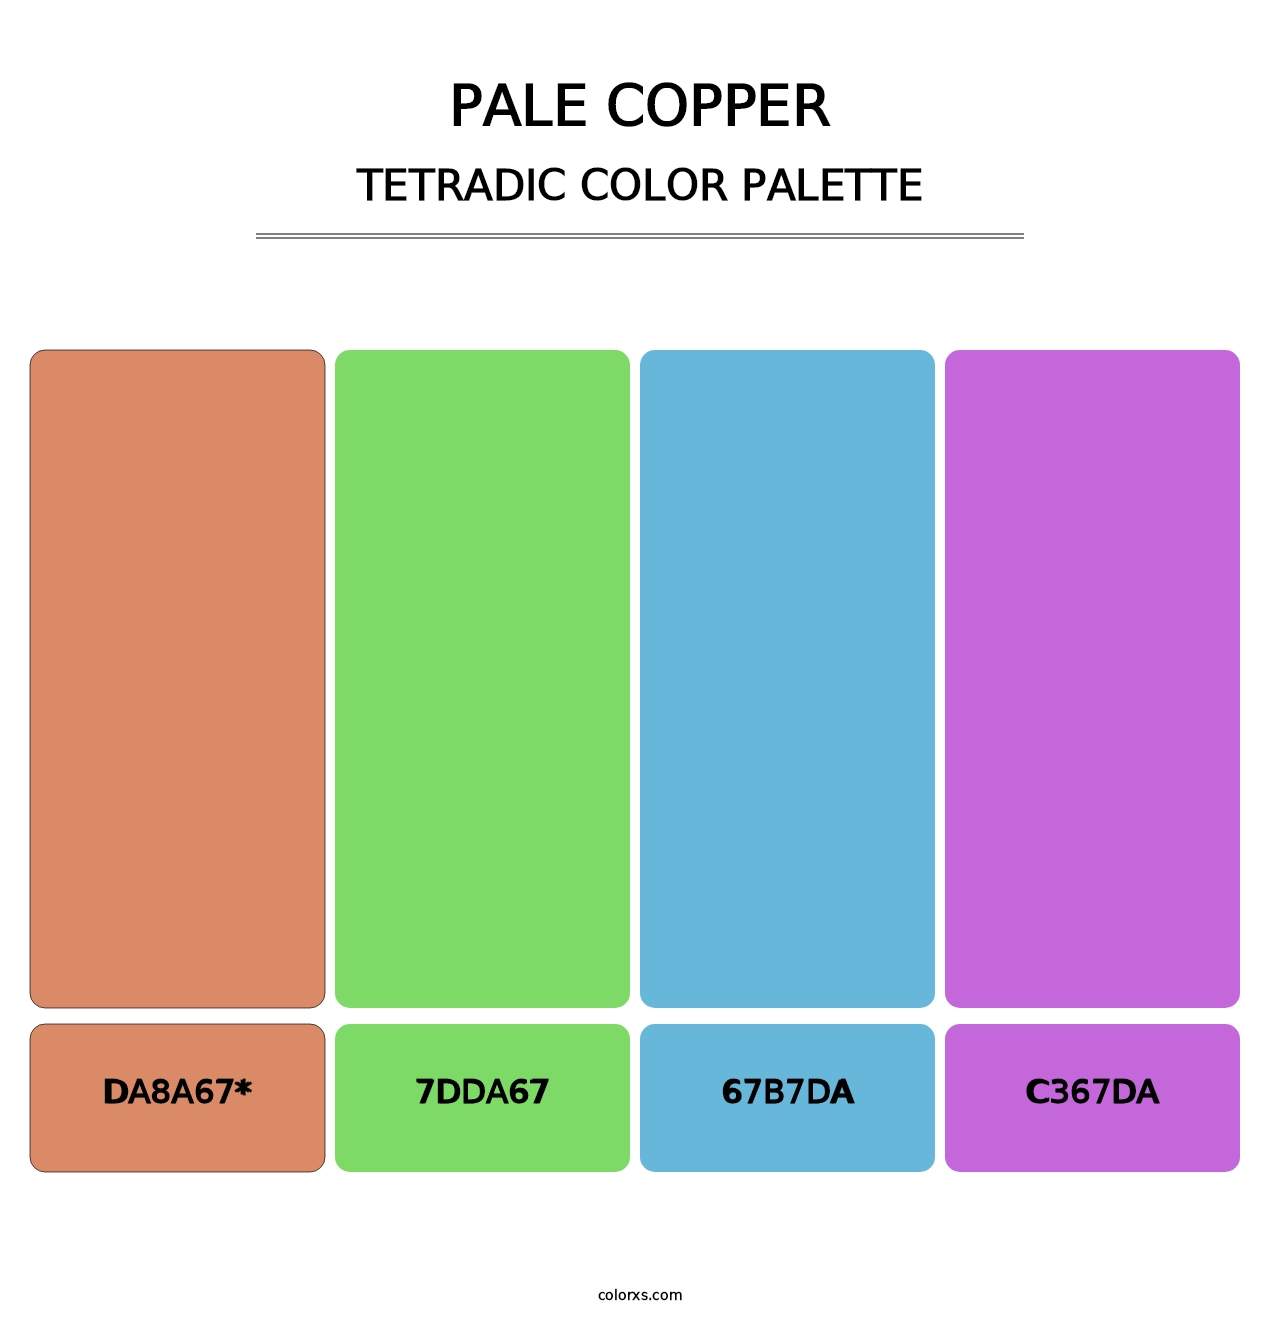 Pale Copper - Tetradic Color Palette